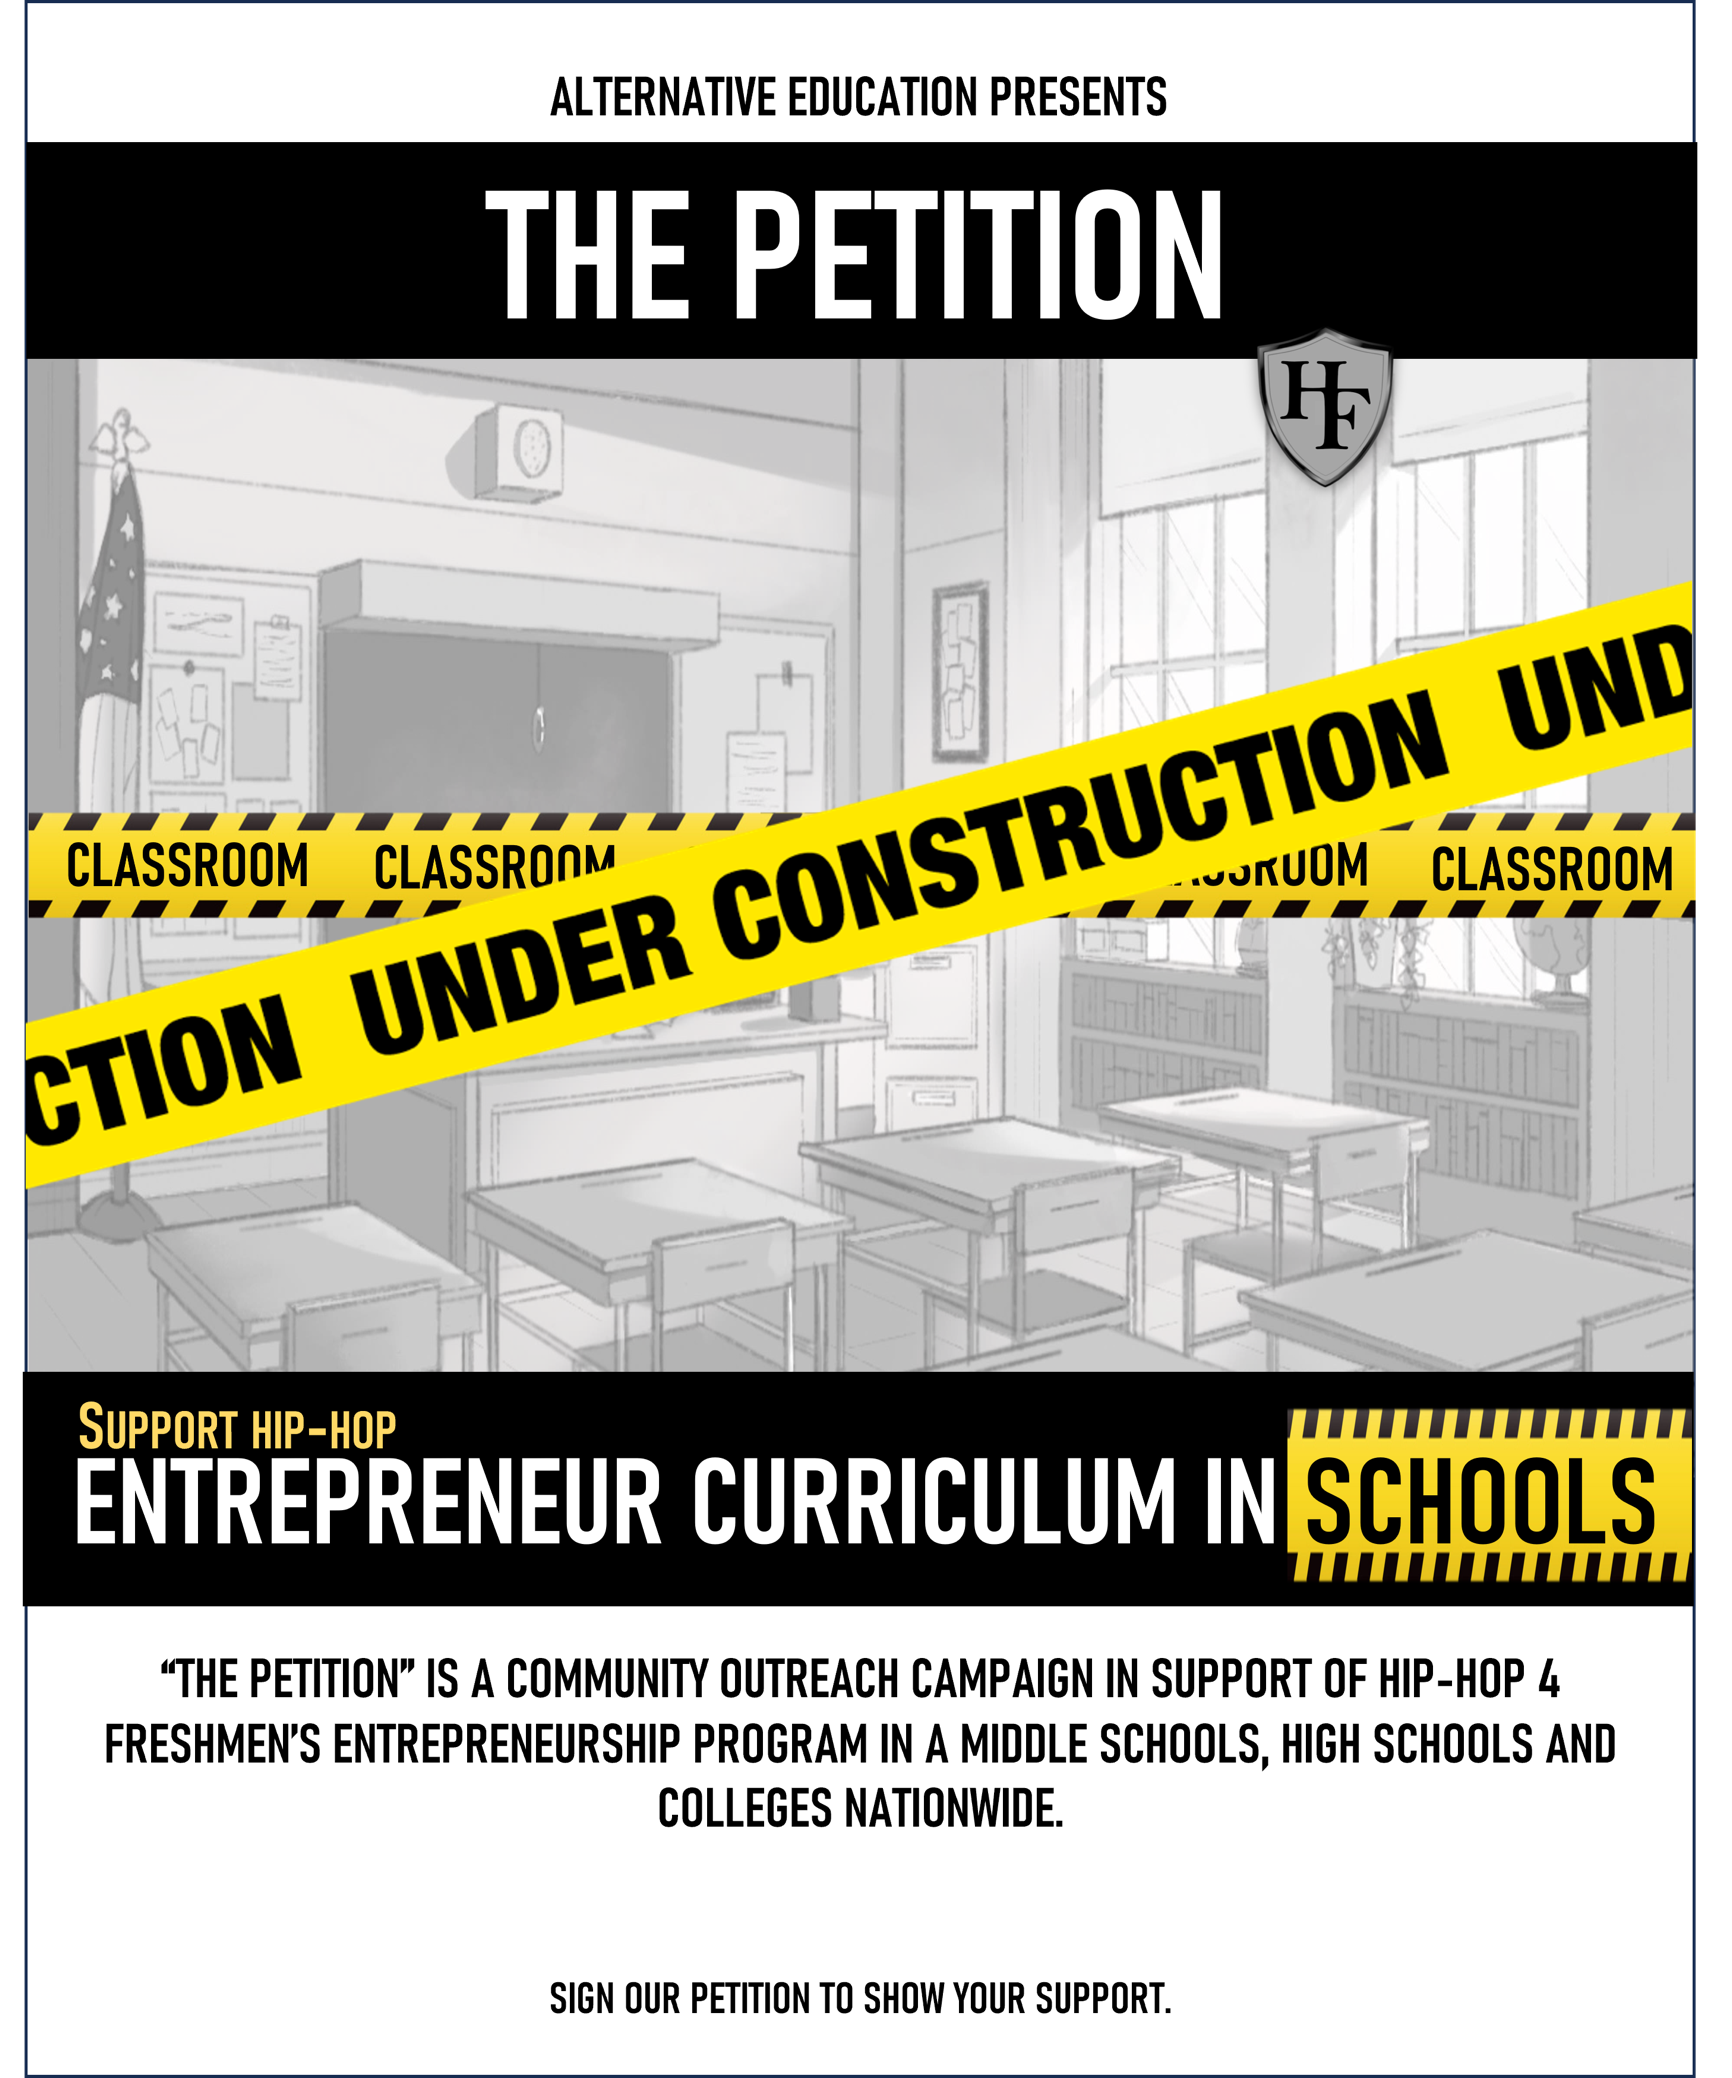 Support Entrepreneur Curriculum in Schools